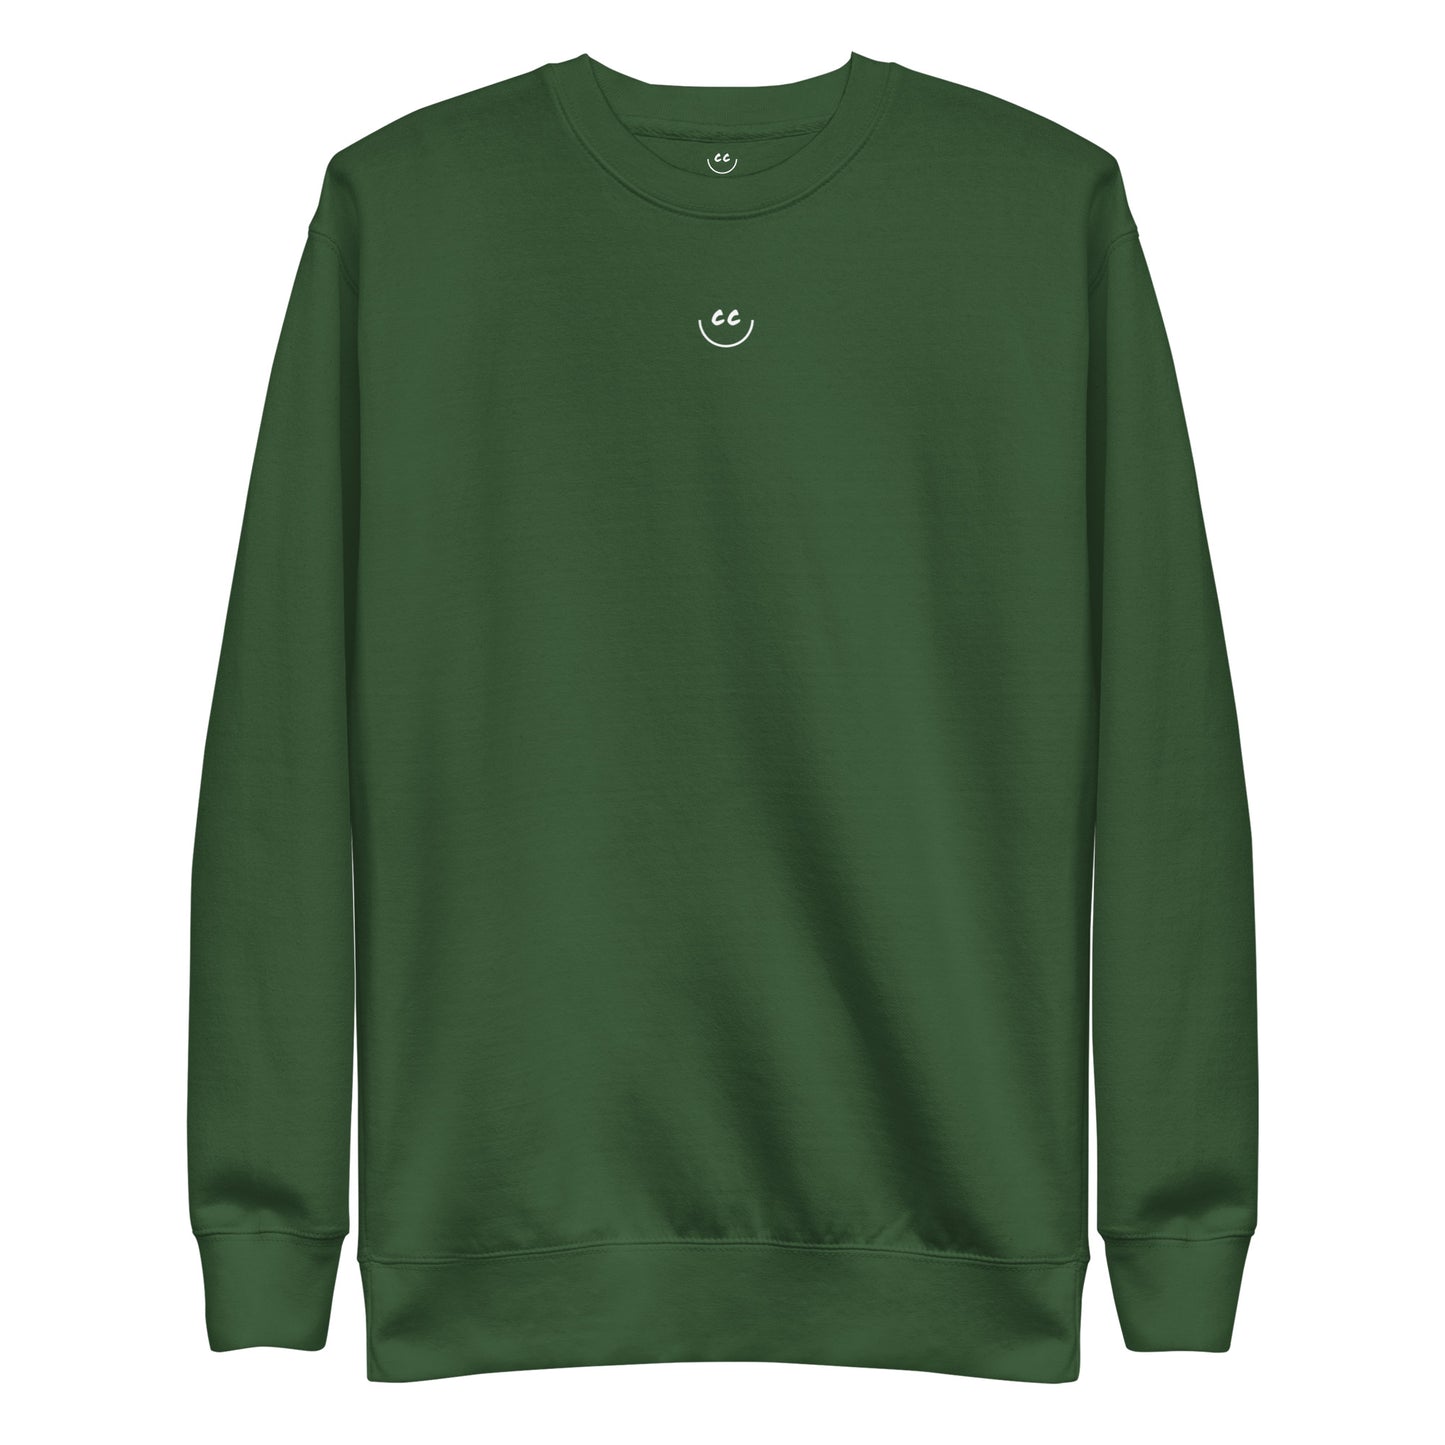 Little Smile Fleece in Forest Green - Sweatshirt